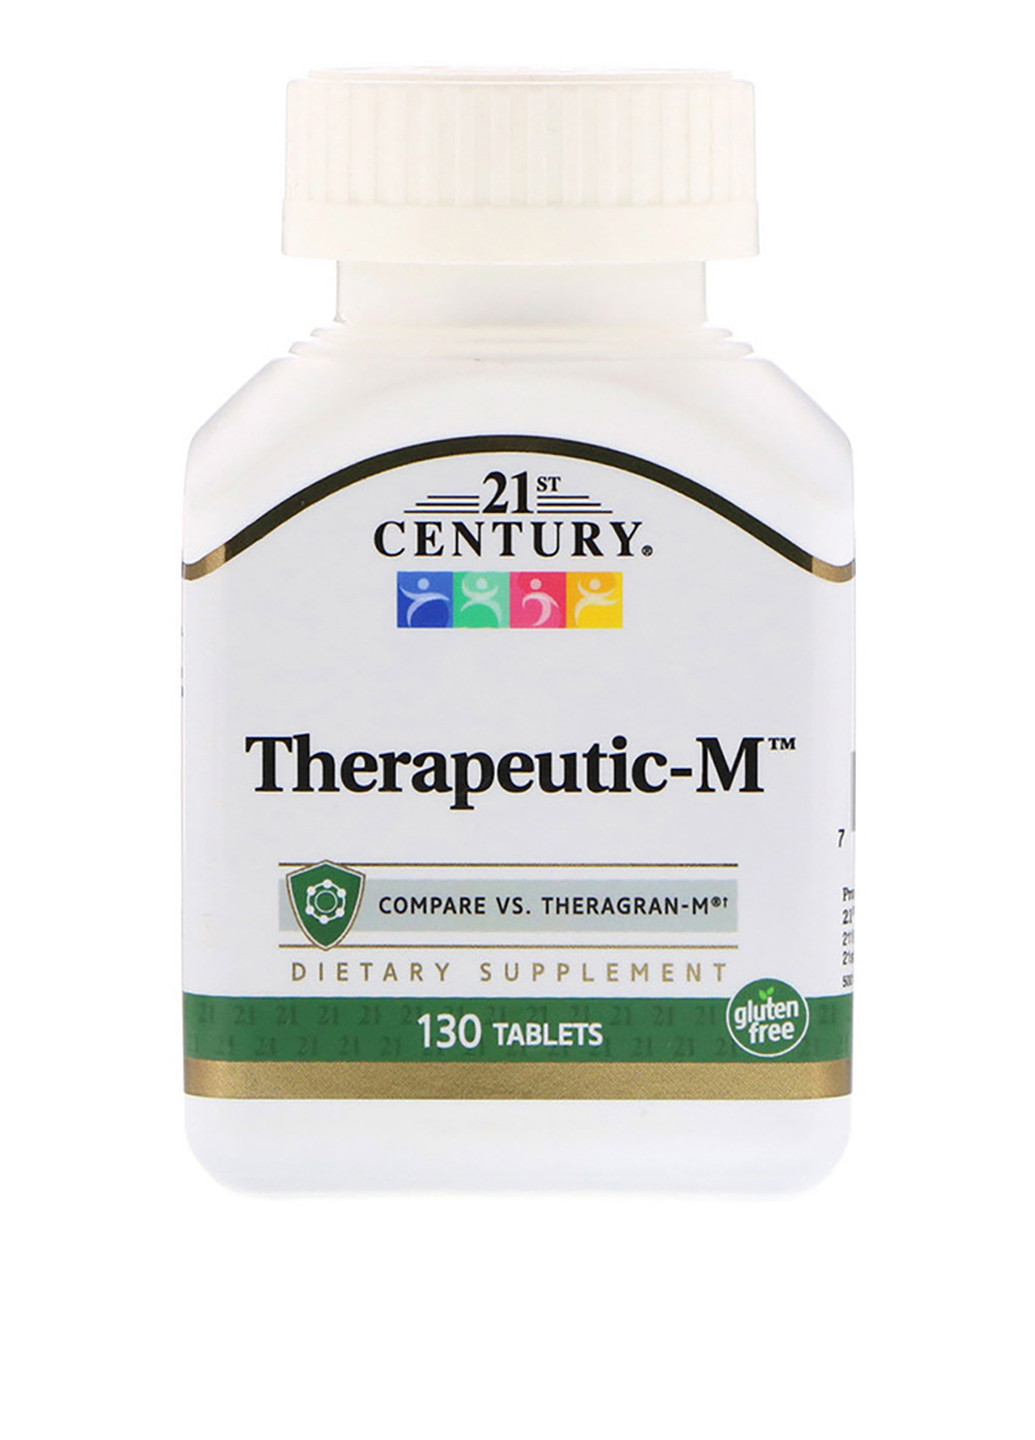 Мультивитамины терапевтические, Therapeutic-M (130 таб.) 21st Century (251206221)